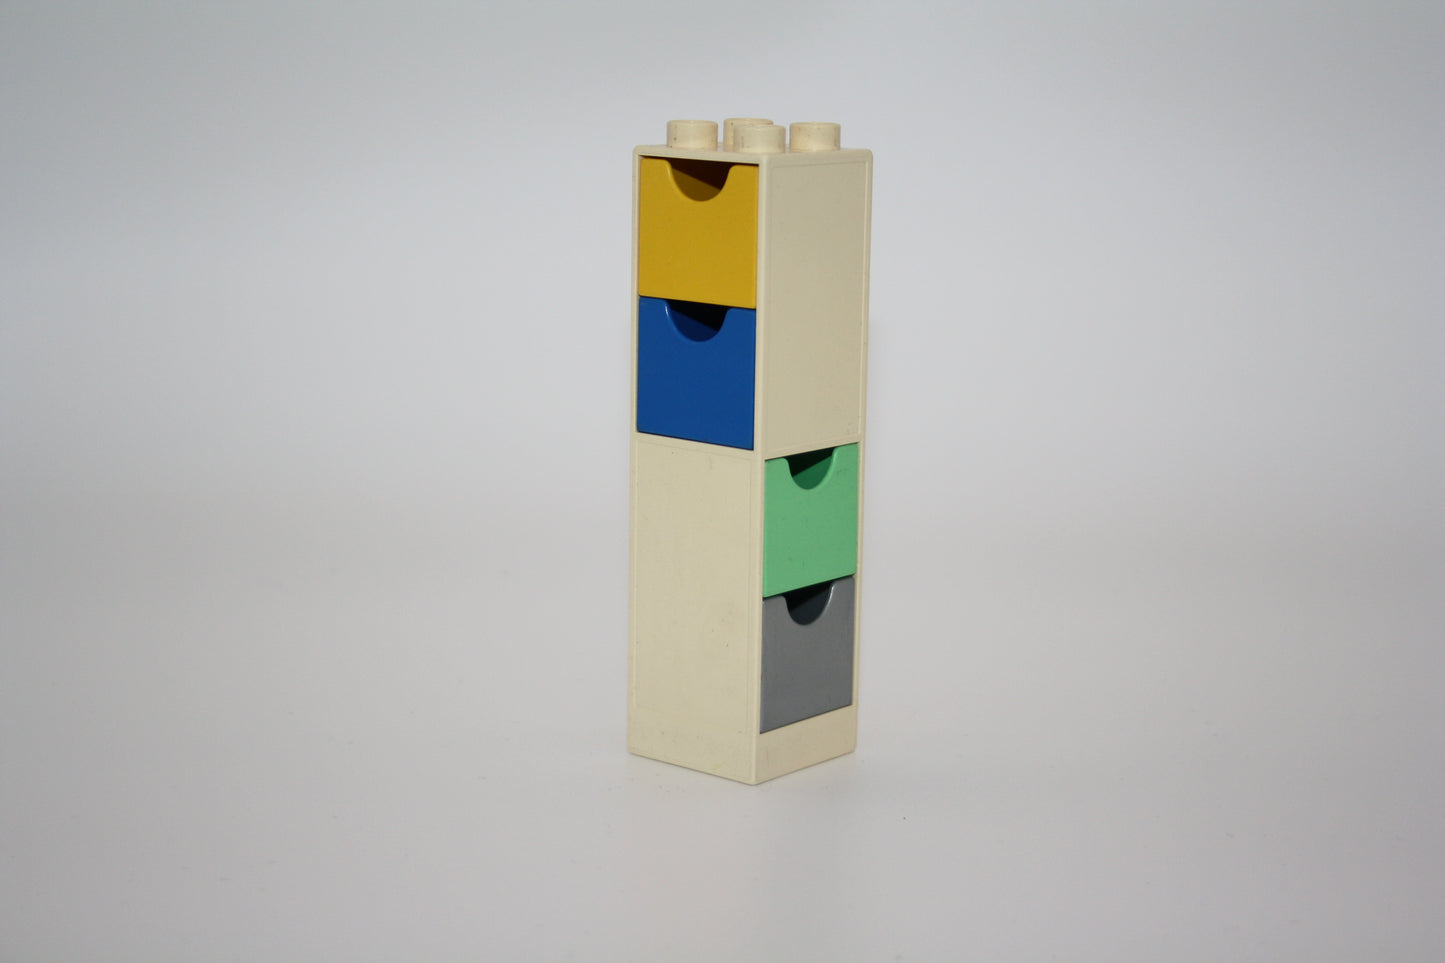 Duplo - Säulen/Eckwände mit Schubladen - versch. Farben - Einrichtung - Bauelement - Zusammengebaut